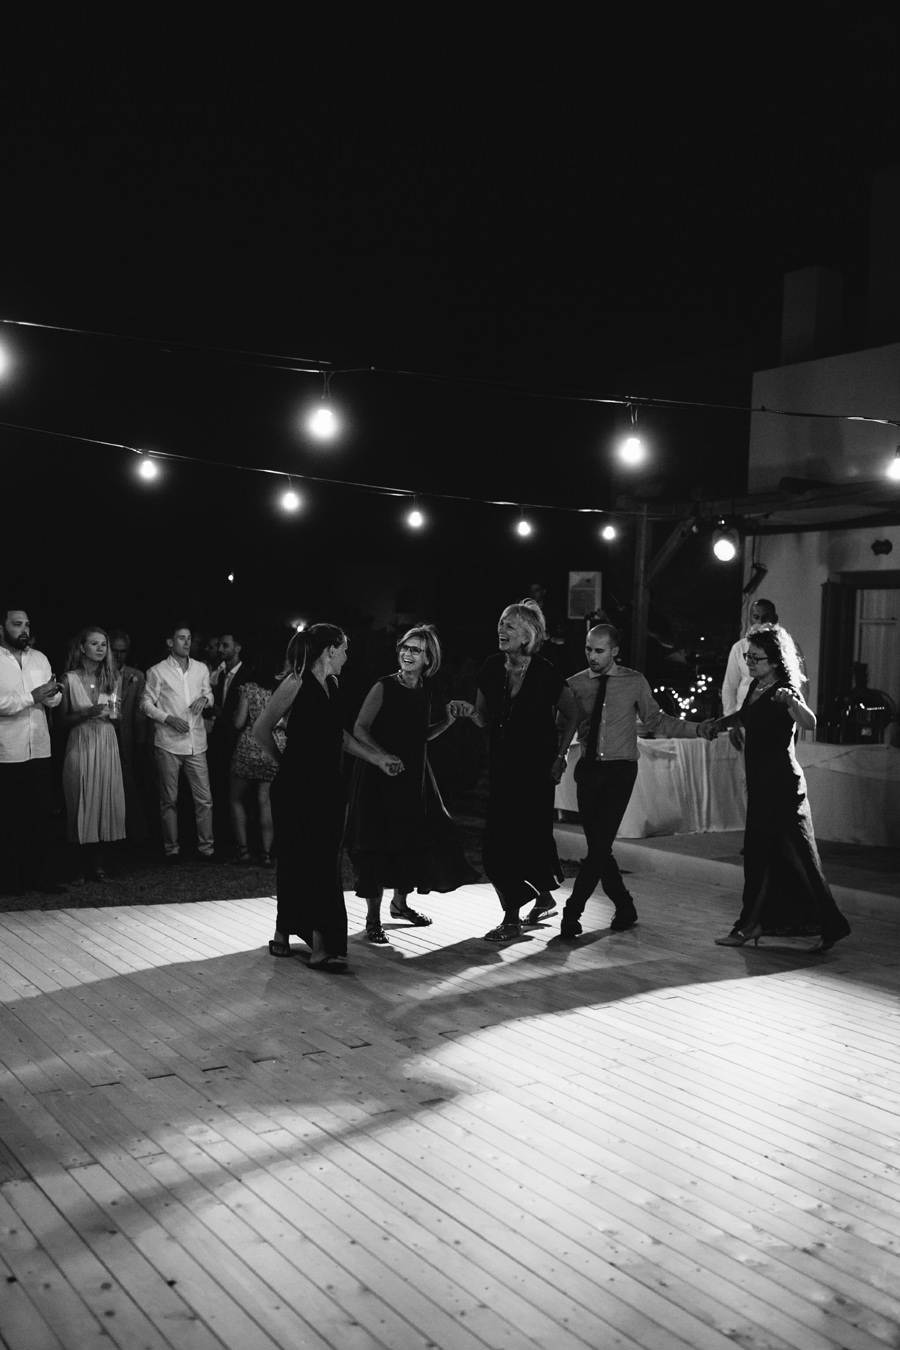 Plenerowy Ślub w Grecji Jaskolska Fotografia